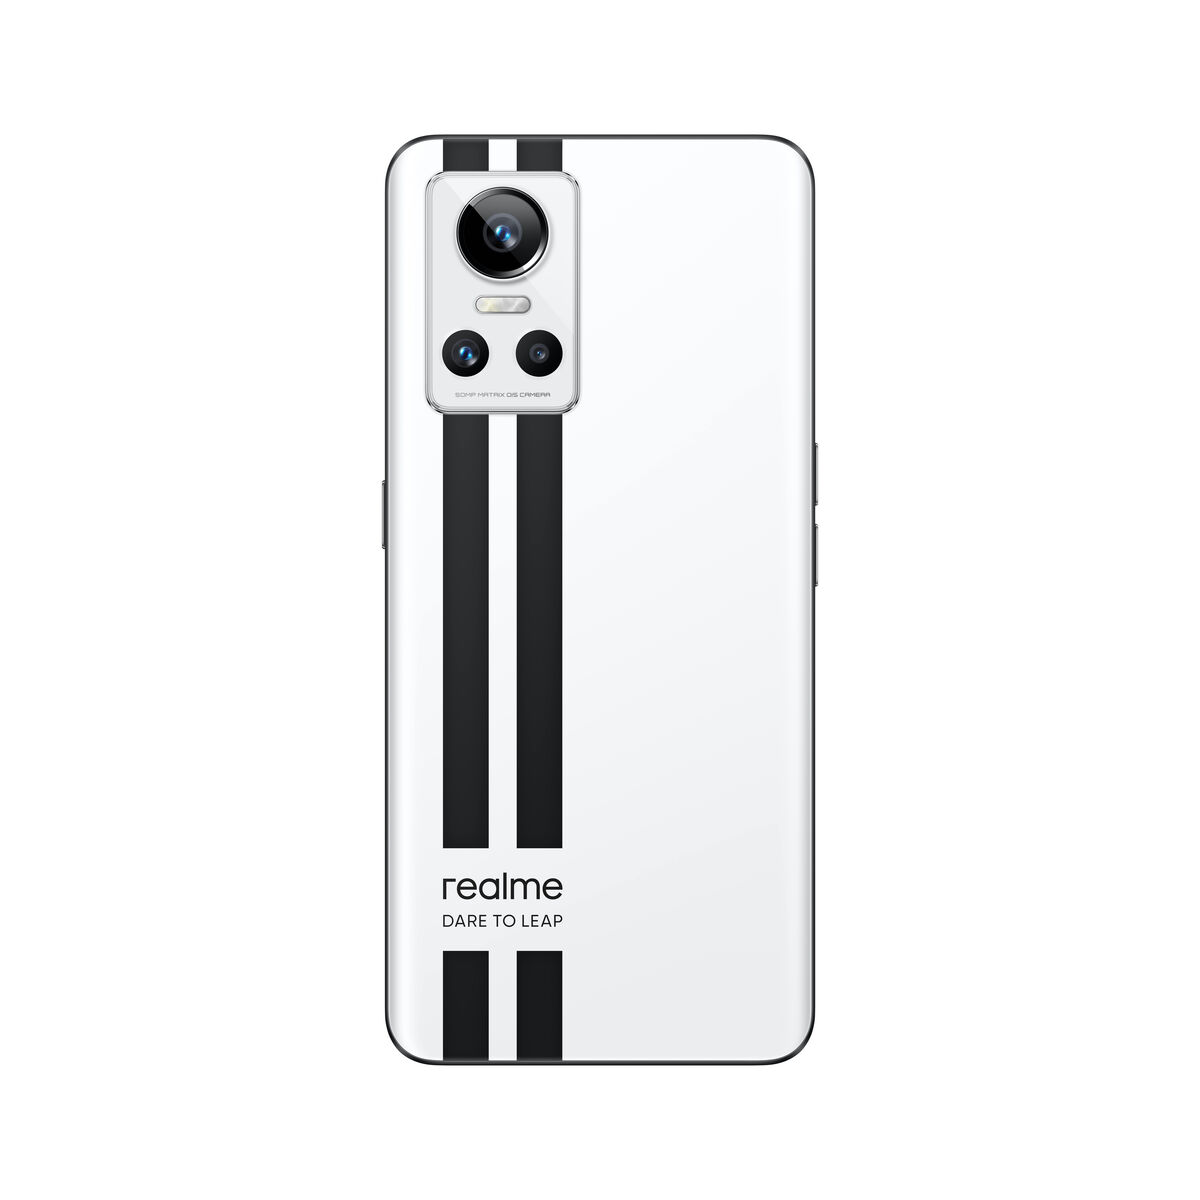 Smartphone Realme GT Neo 3 12GB  256GB 6,7"